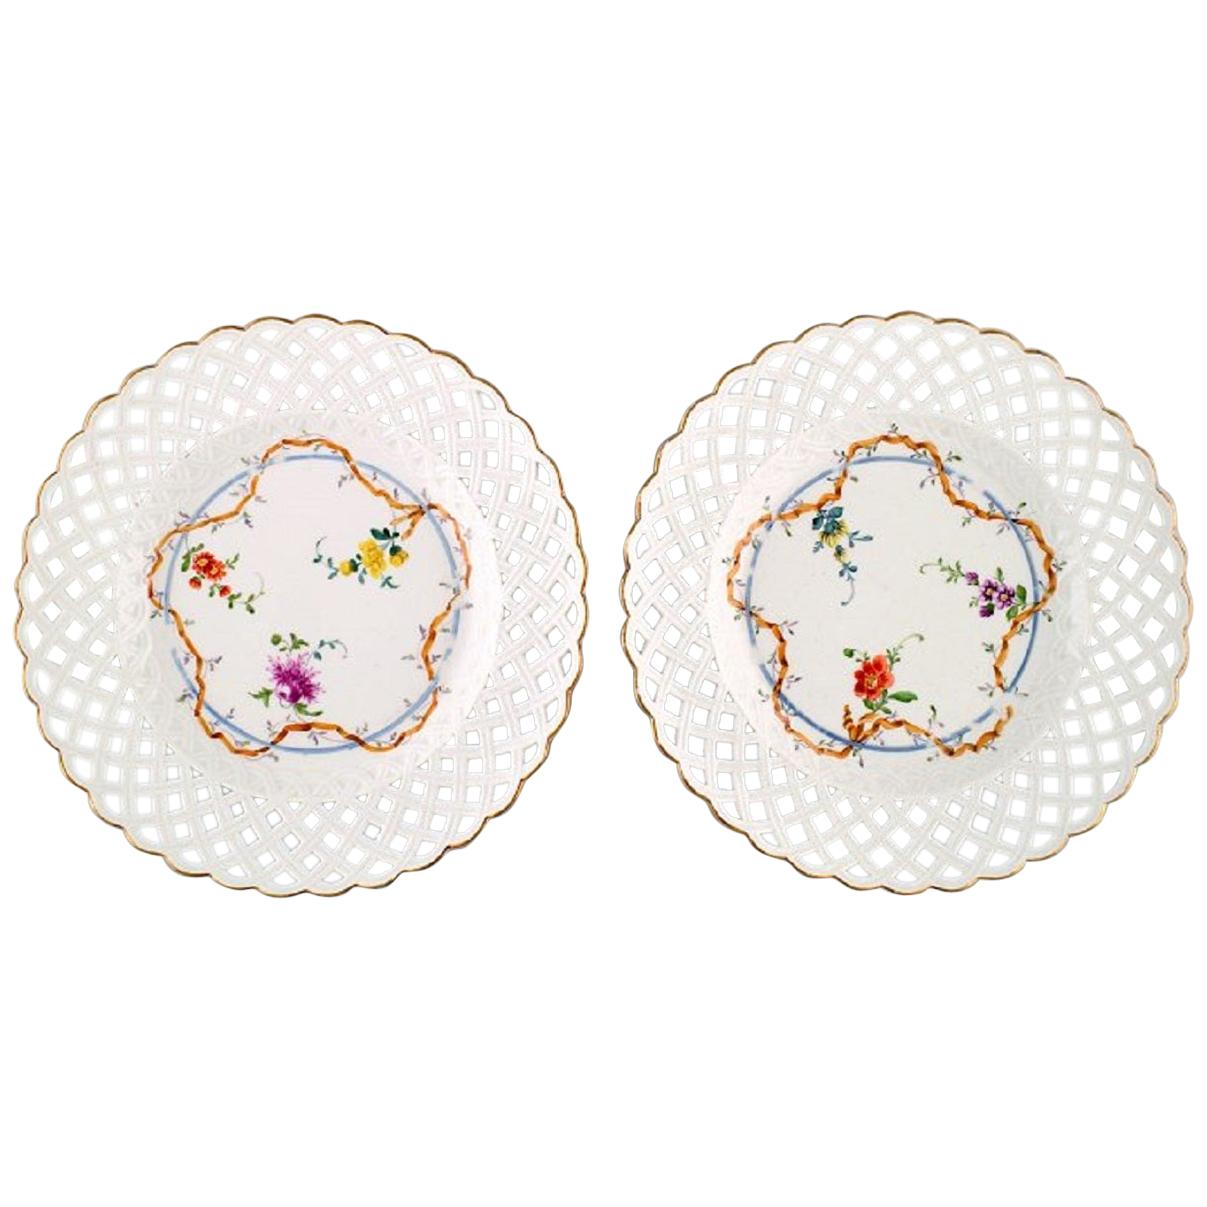 Zwei antike Meißner Teller aus durchbrochenem Porzellan mit handgemalten floralen Motiven